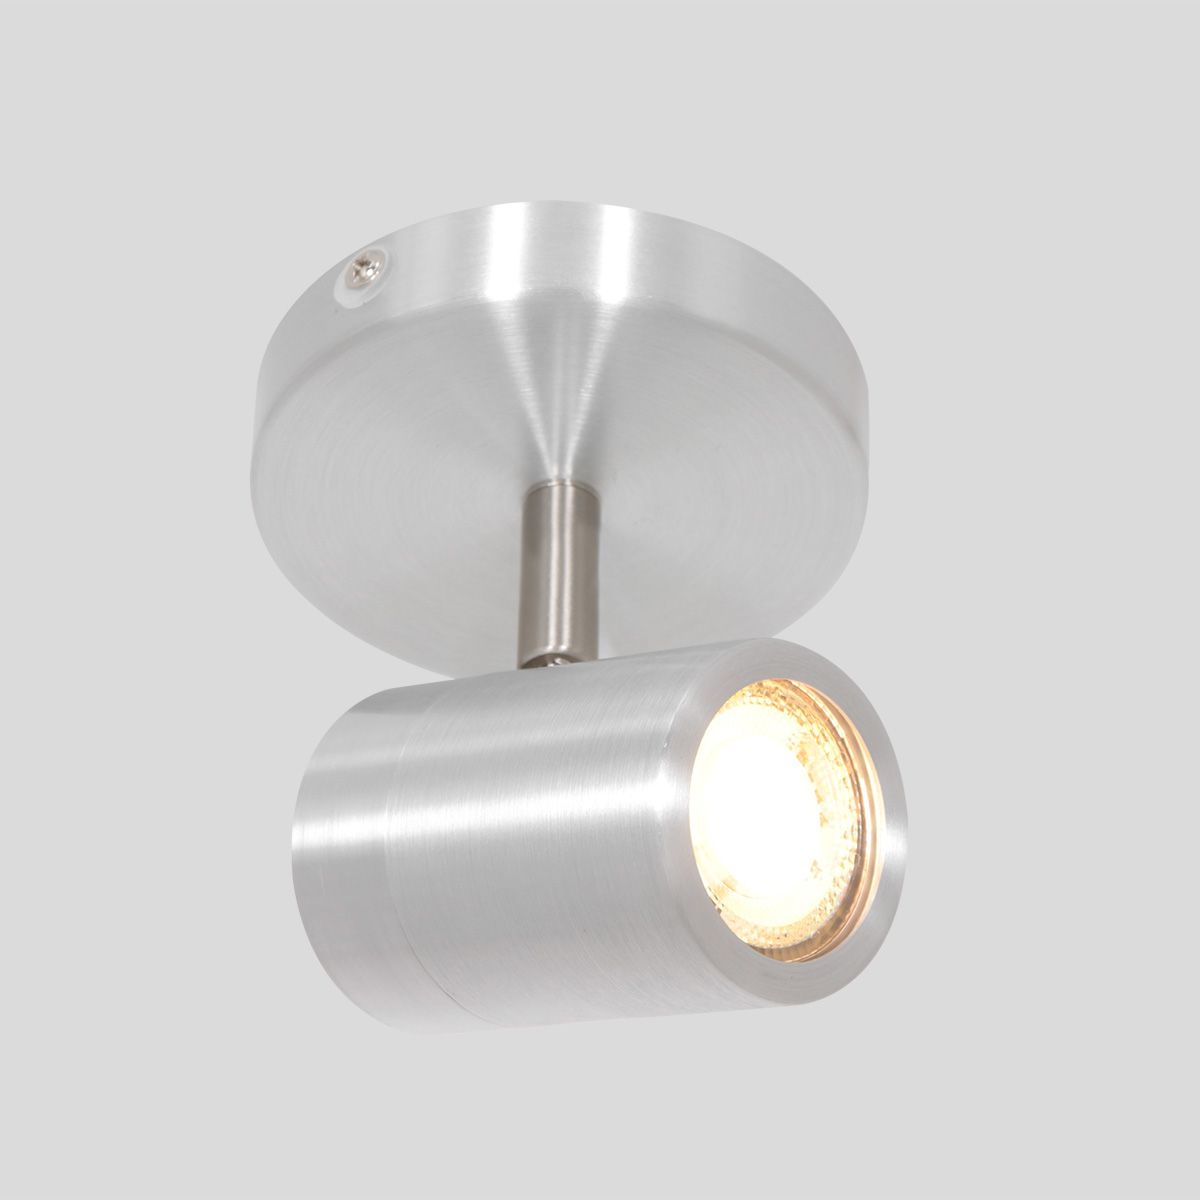 Se Spot-Up - loftlampe i metal i tre forskellige finish Metal - stål hos 3-nordic